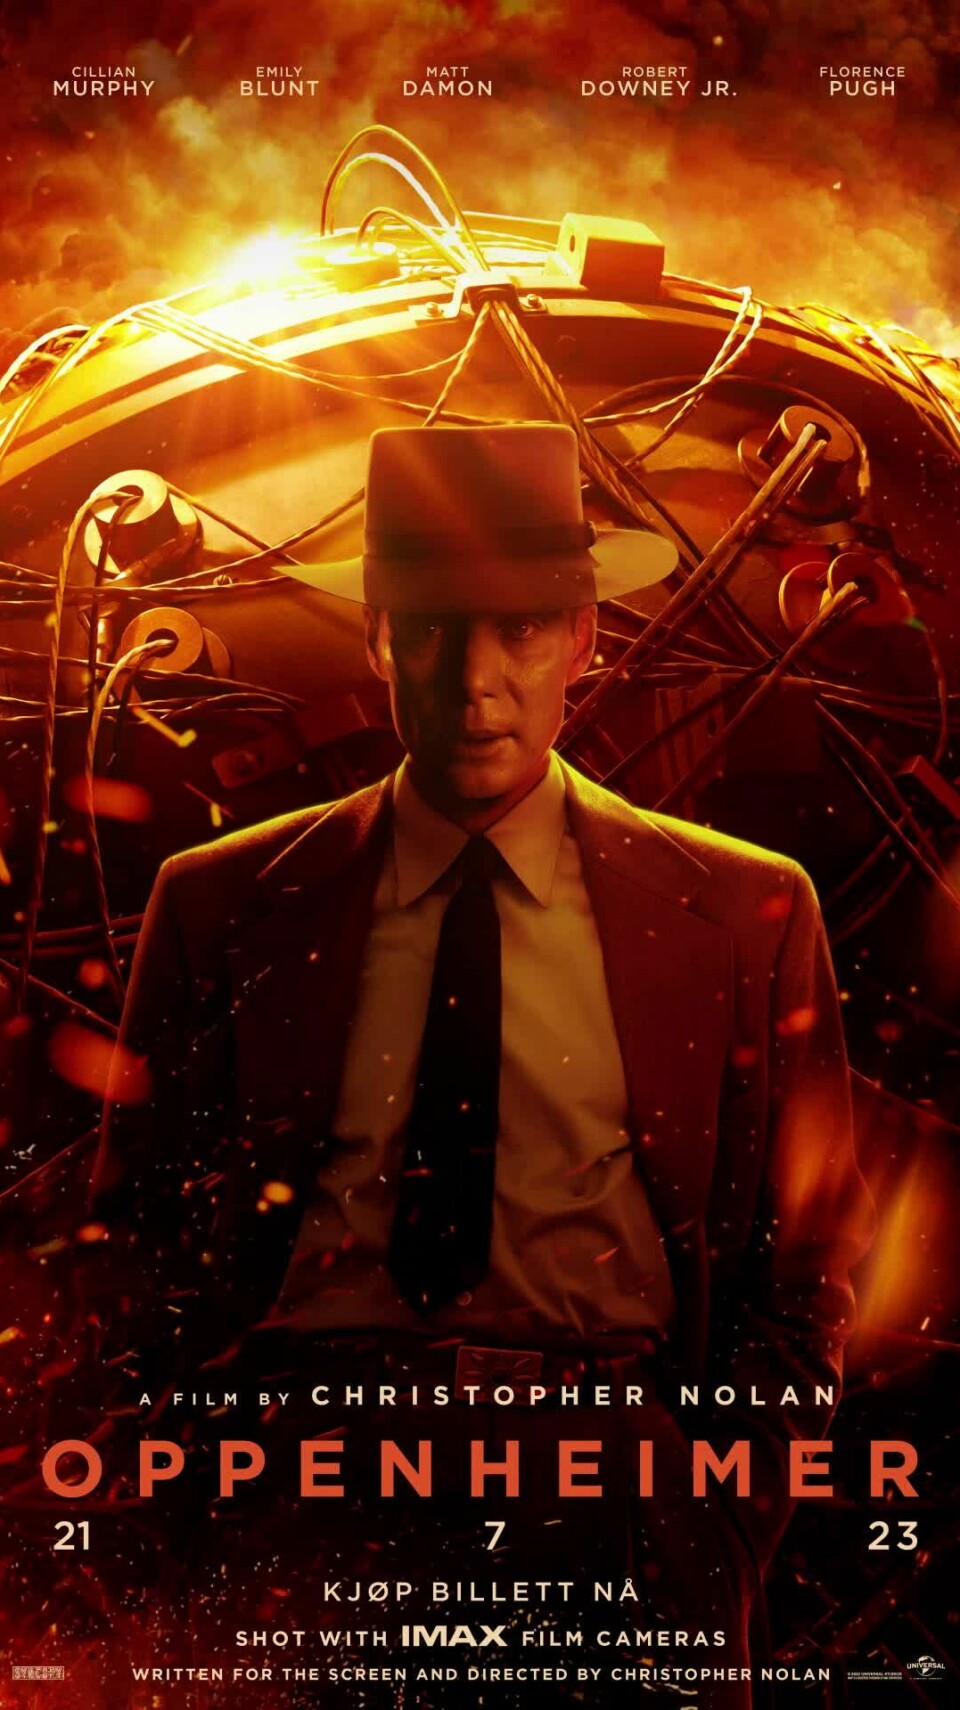 En filmplakat for filmen 'oppenheimer'. En mann i dress og hatt går foran en atombombe